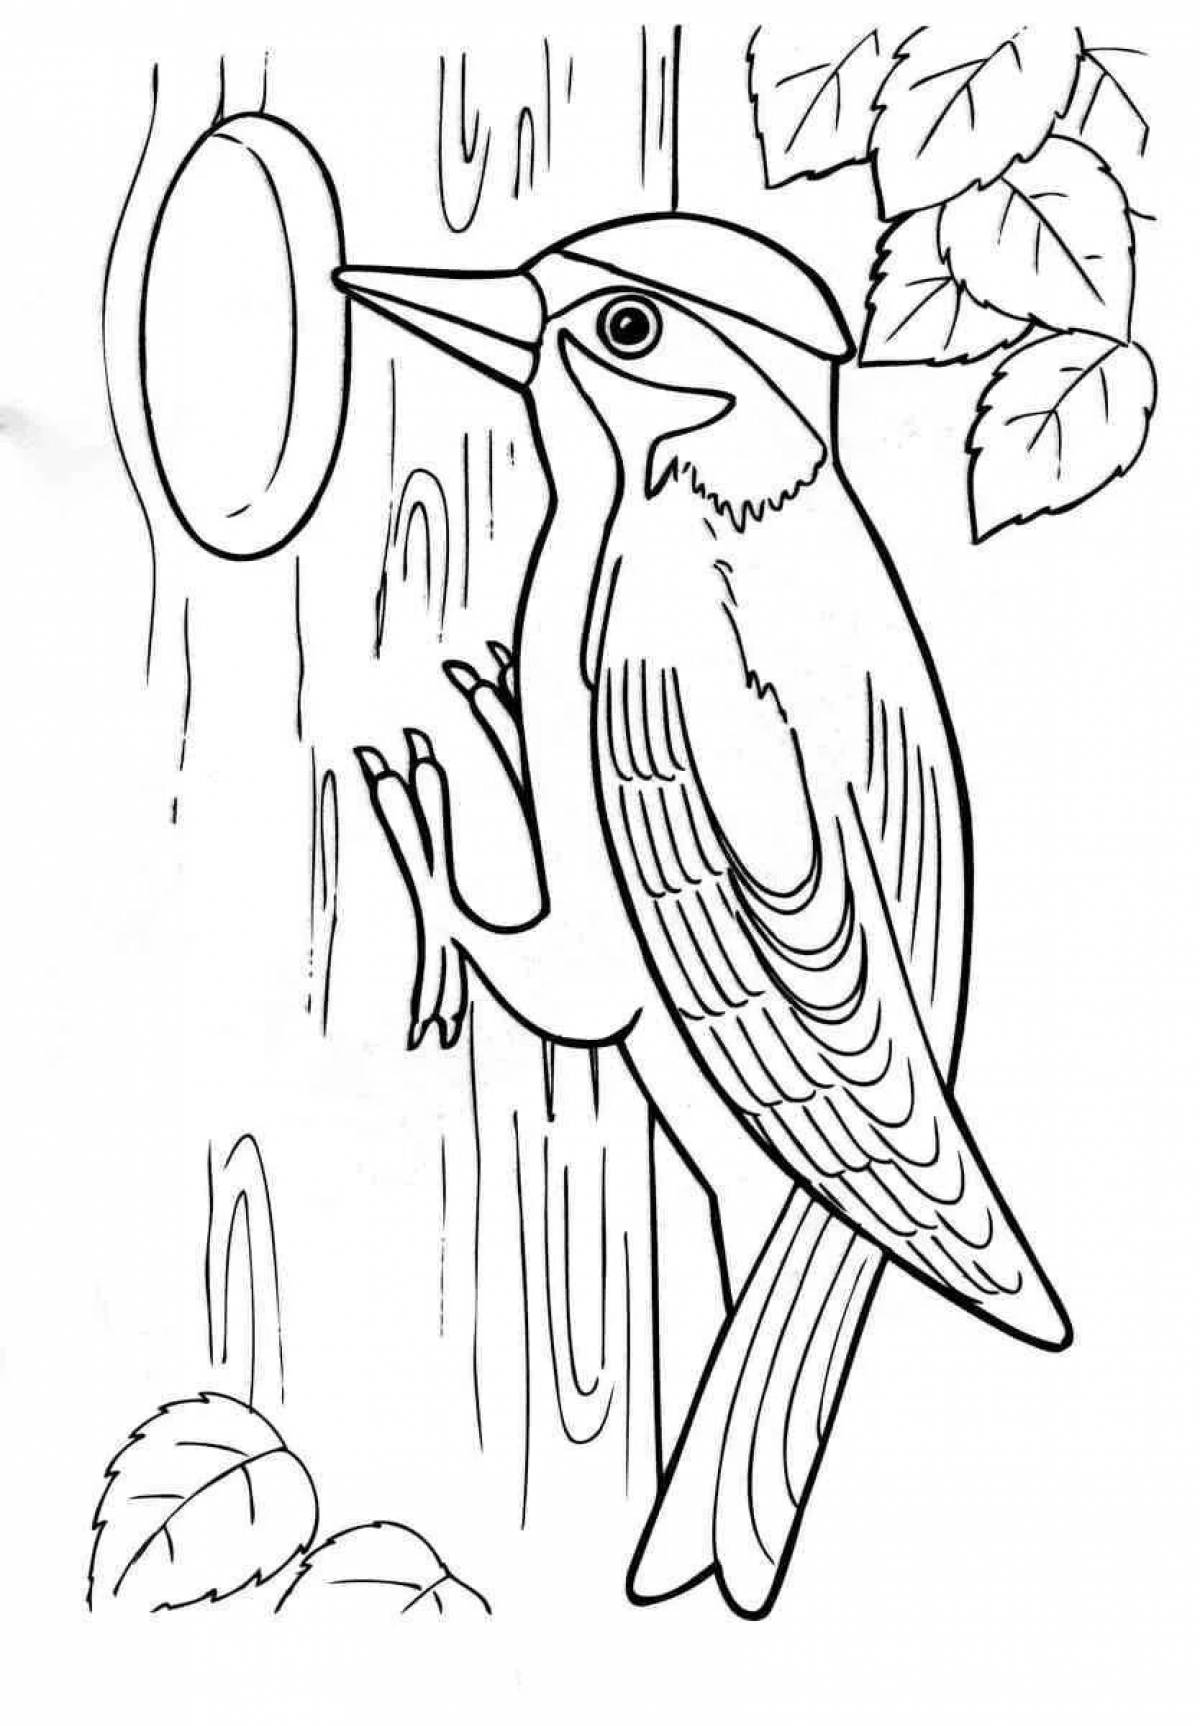 Woodpecker drawing #1